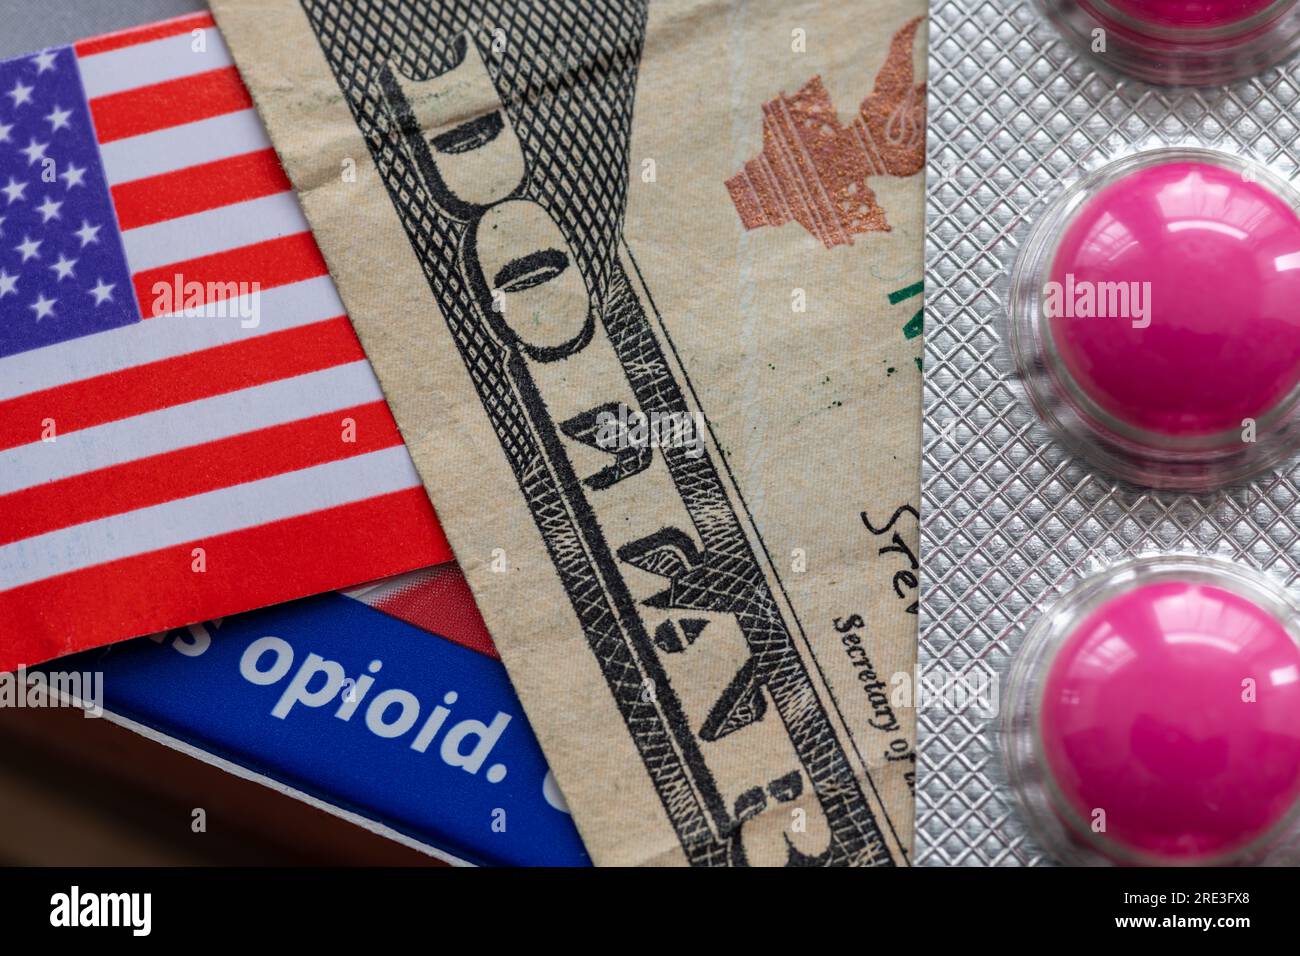 Un concetto di dipendenza da oppioidi con una banconota da dollaro, una bandiera americana e la parola oppioide su una scatola di medicine. Foto Stock